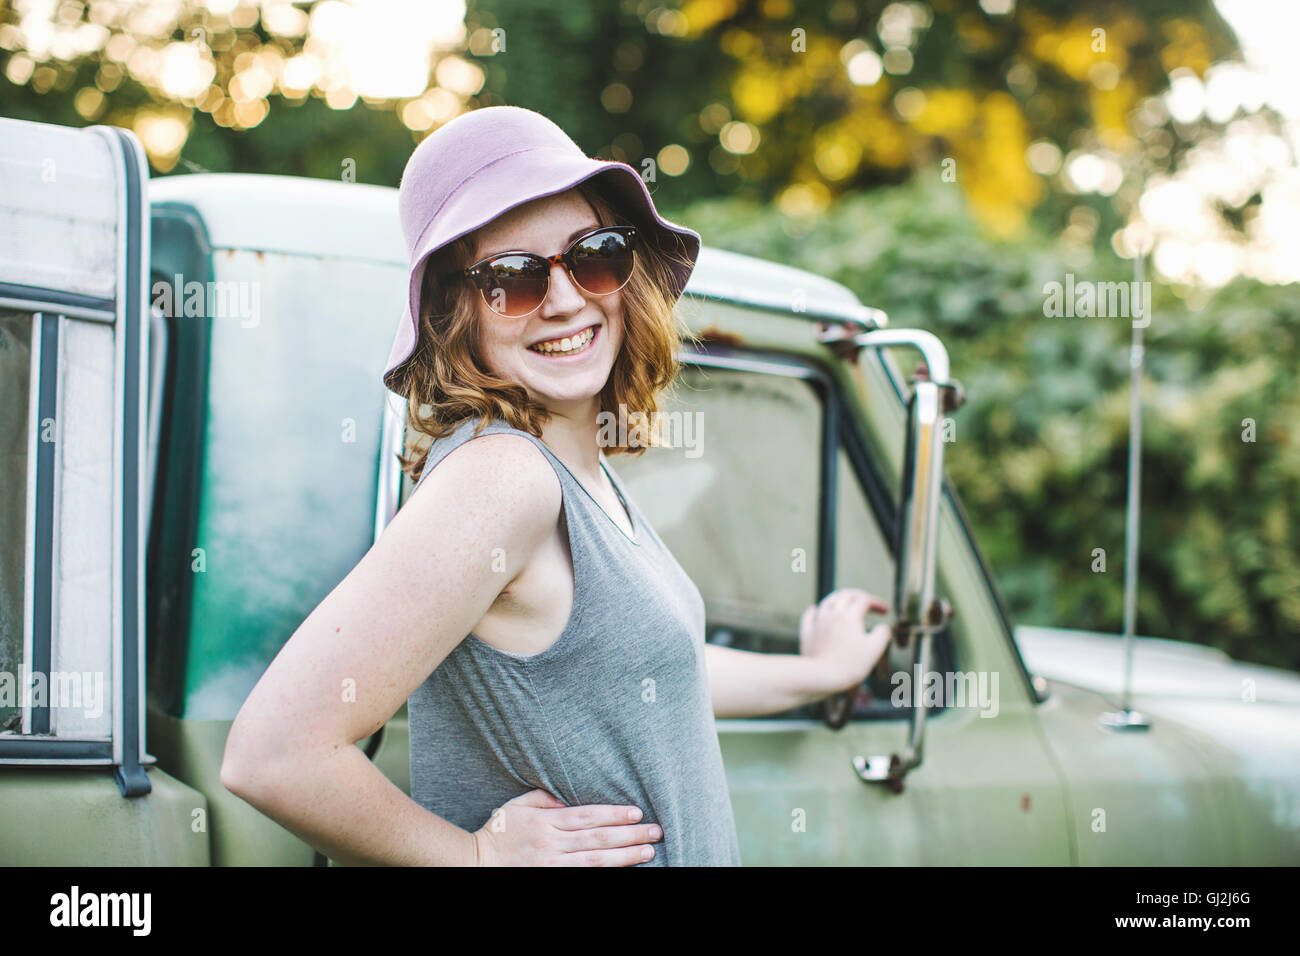 Frau mit Sonnenhut und eine Sonnenbrille, die auf der Suche über die Schulter in die Kamera Lächeln Stockfoto